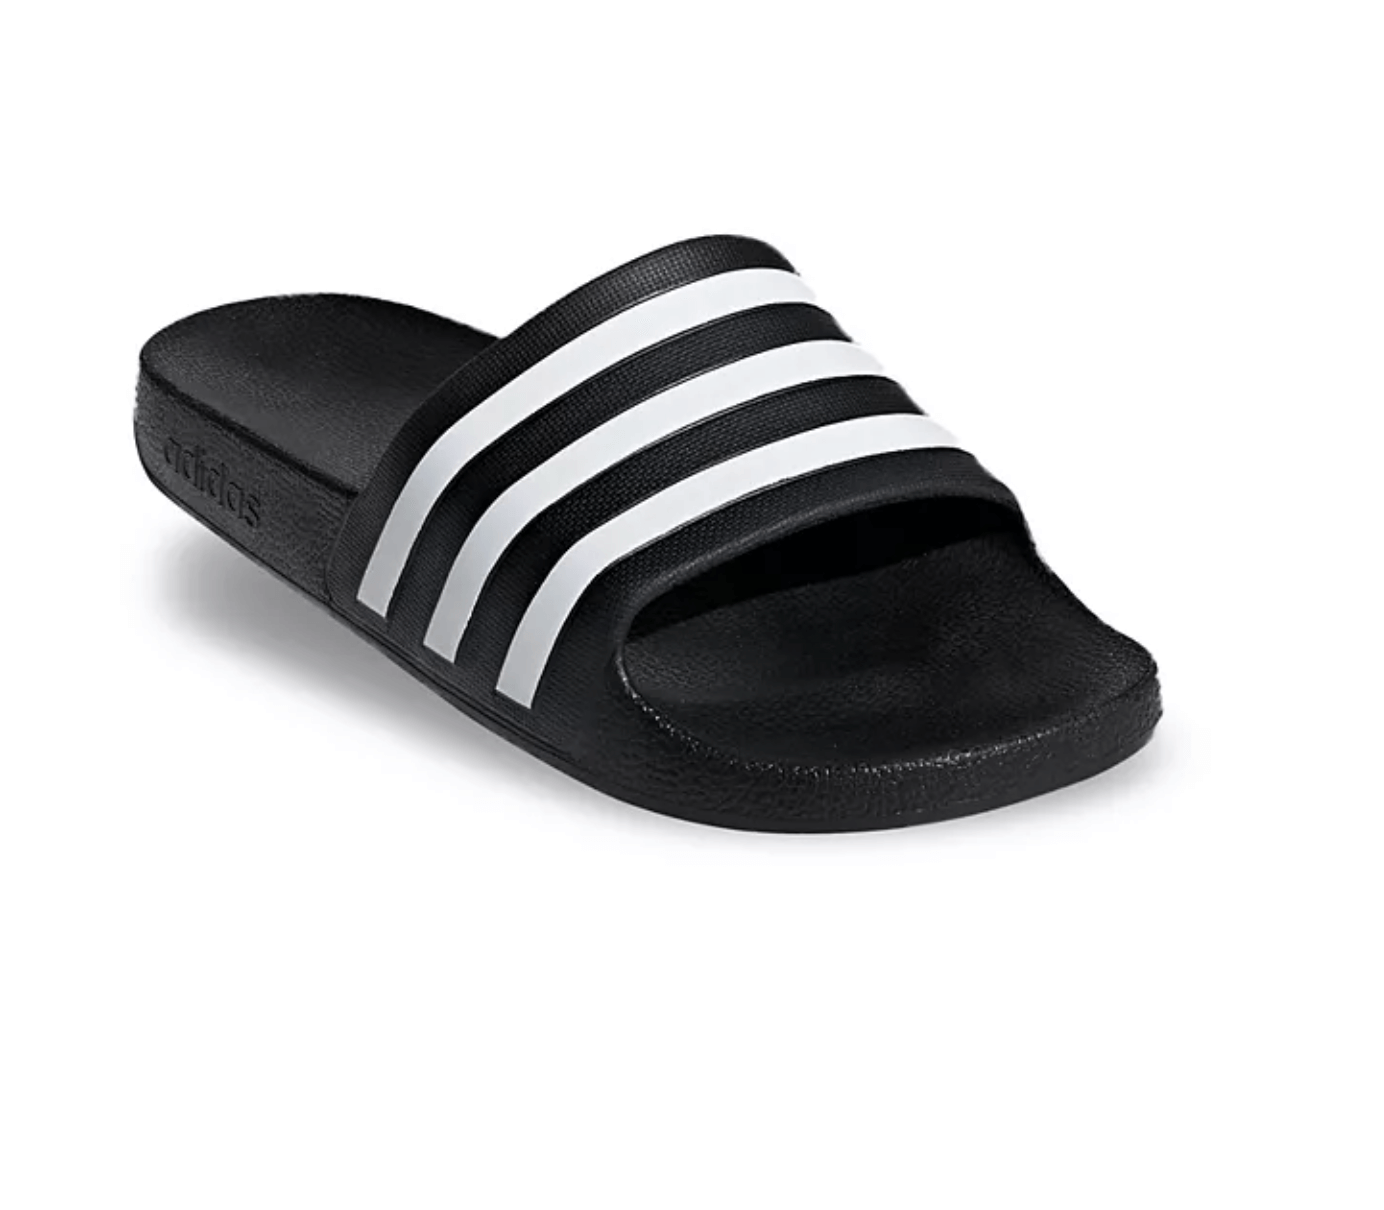 A black and white slide sandal